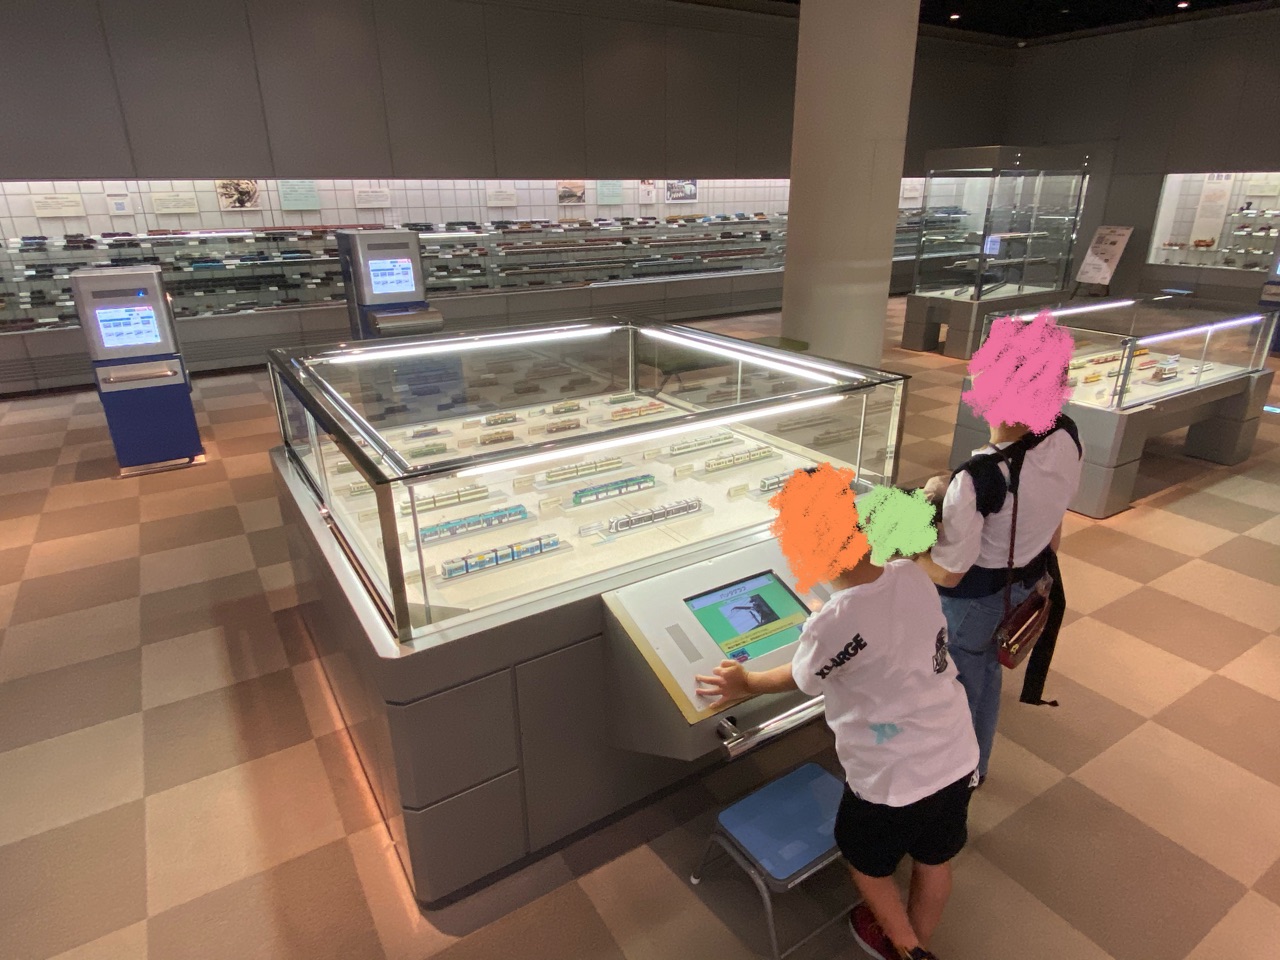 ヌマジ交通ミュージアム(広島市交通科学館)の電車模型展示